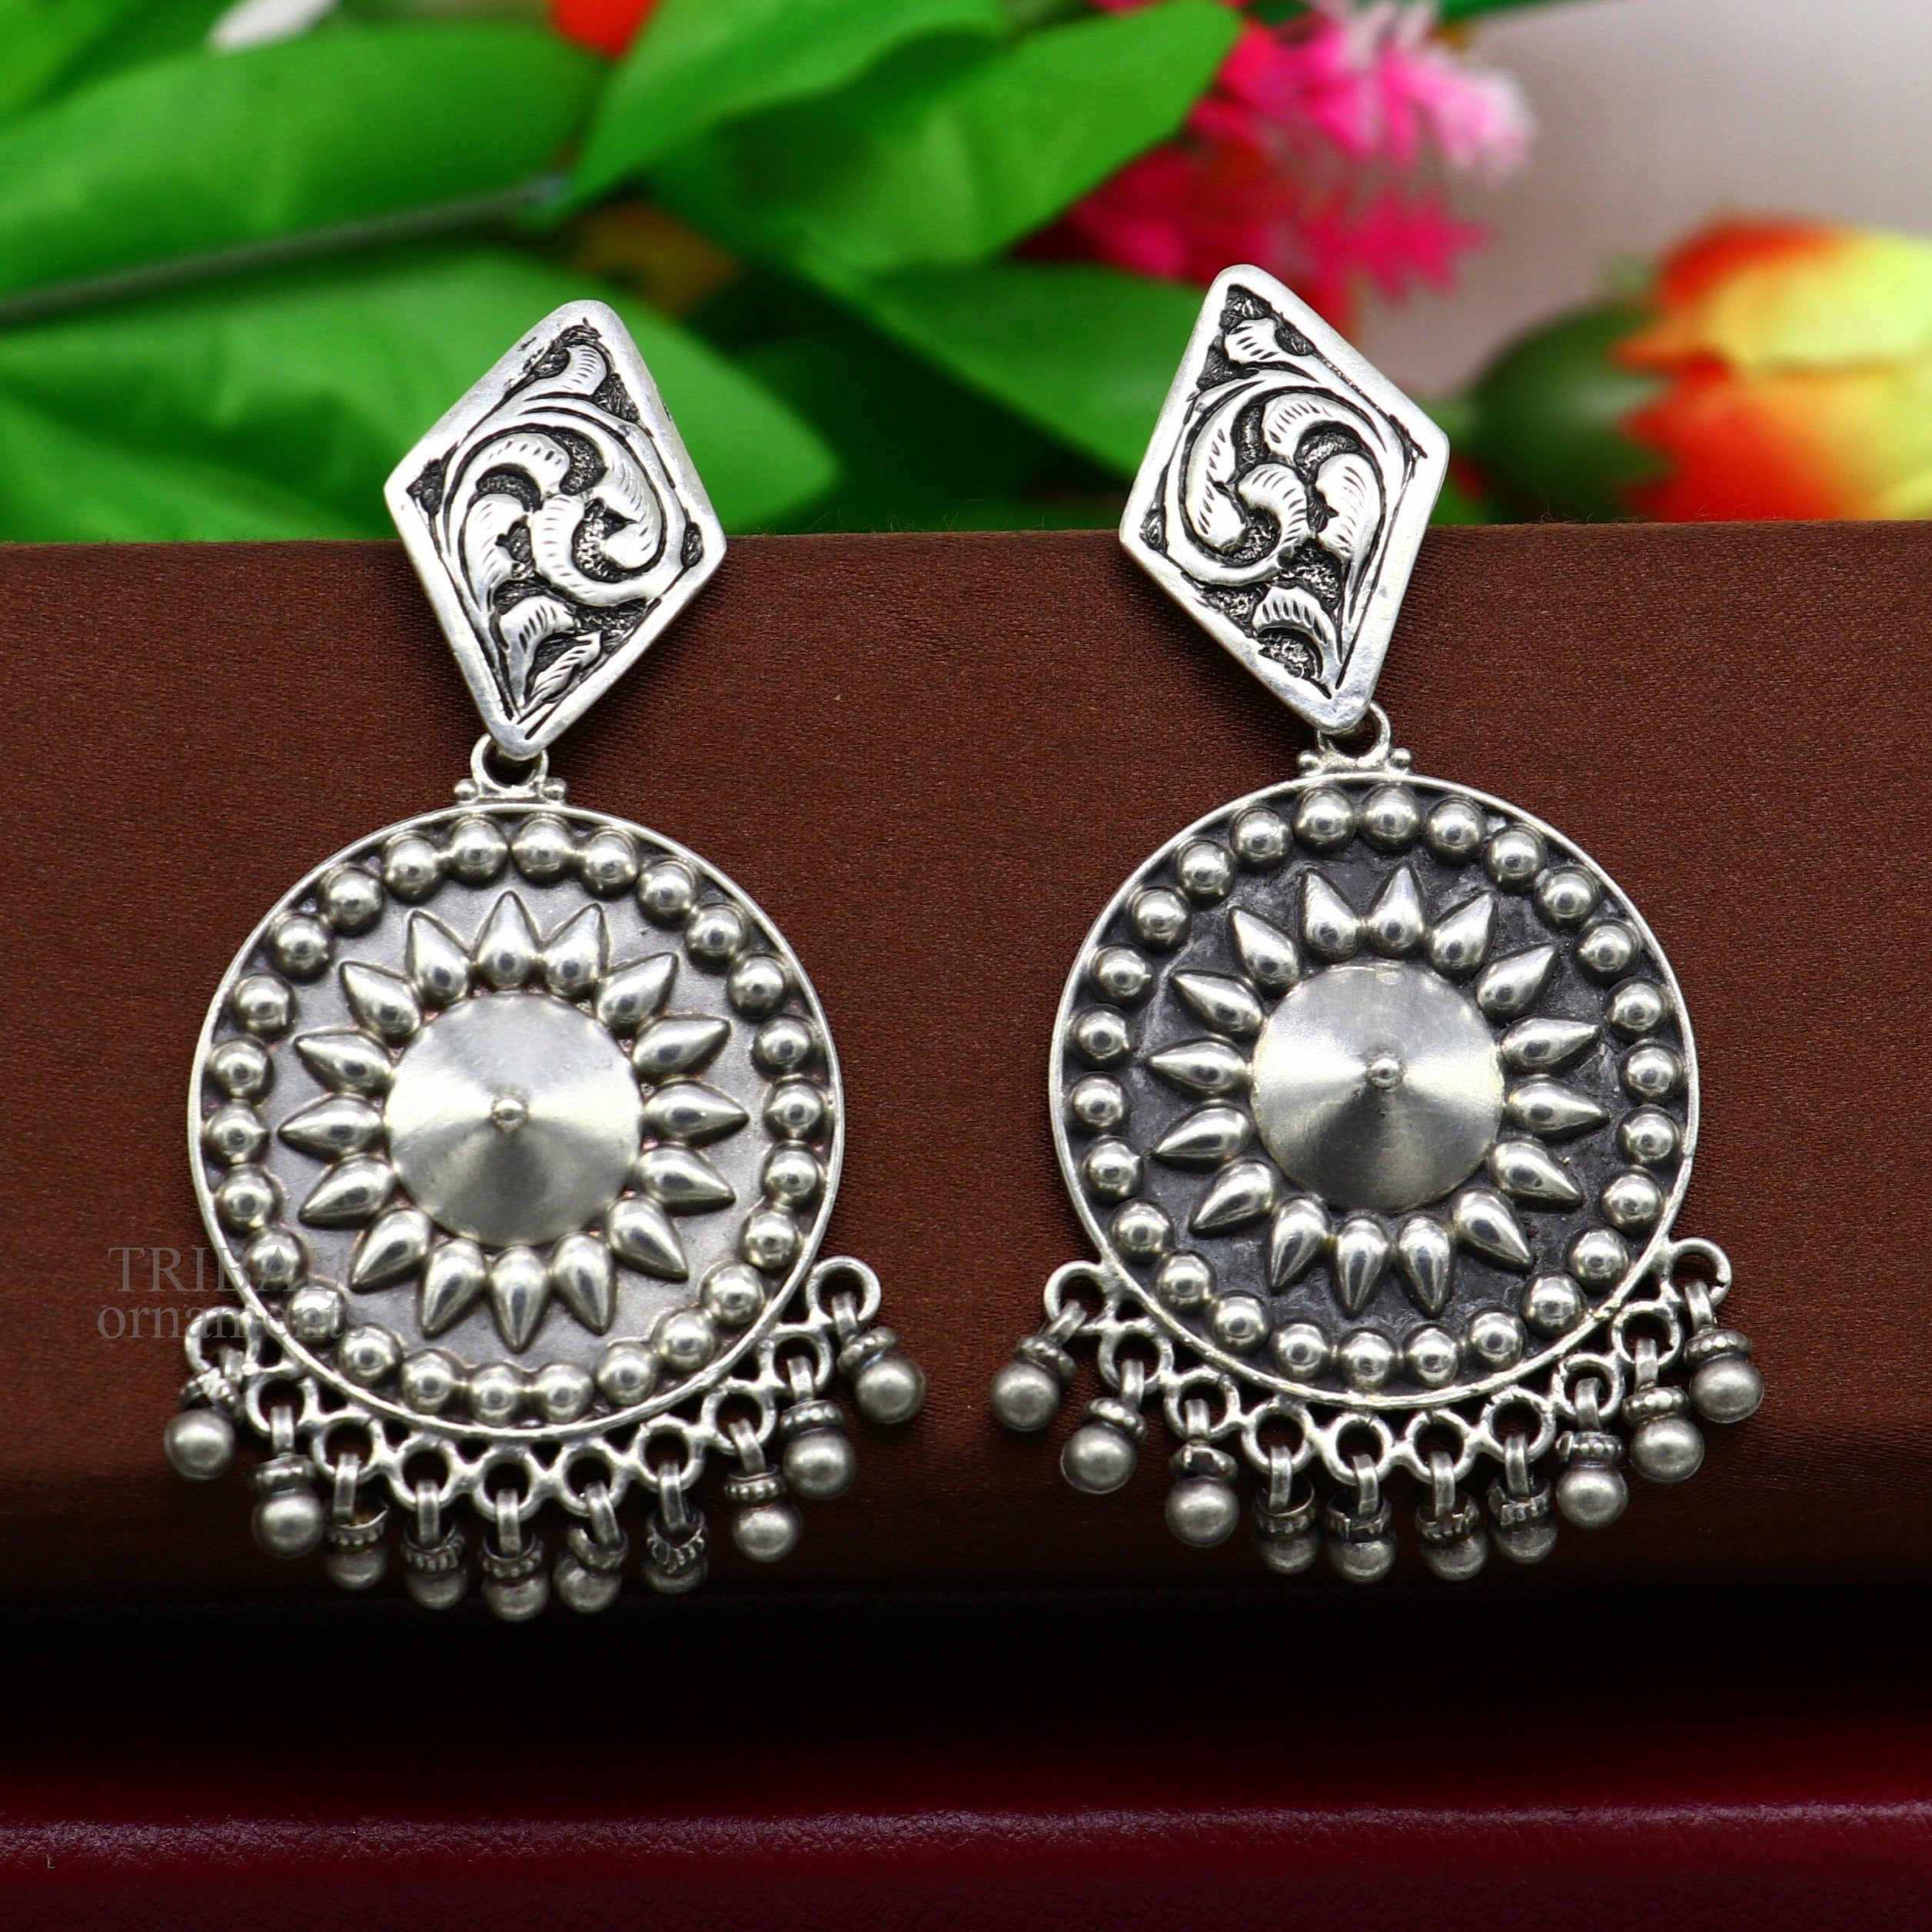 925 Sterling Silver Tiger Eye Gemstone Handmade Jewelry Stud Earring  SJWES-45 at Rs 140/pair | Sterling Silver Gemstone Stud Earrings in Jaipur  | ID: 18305986055